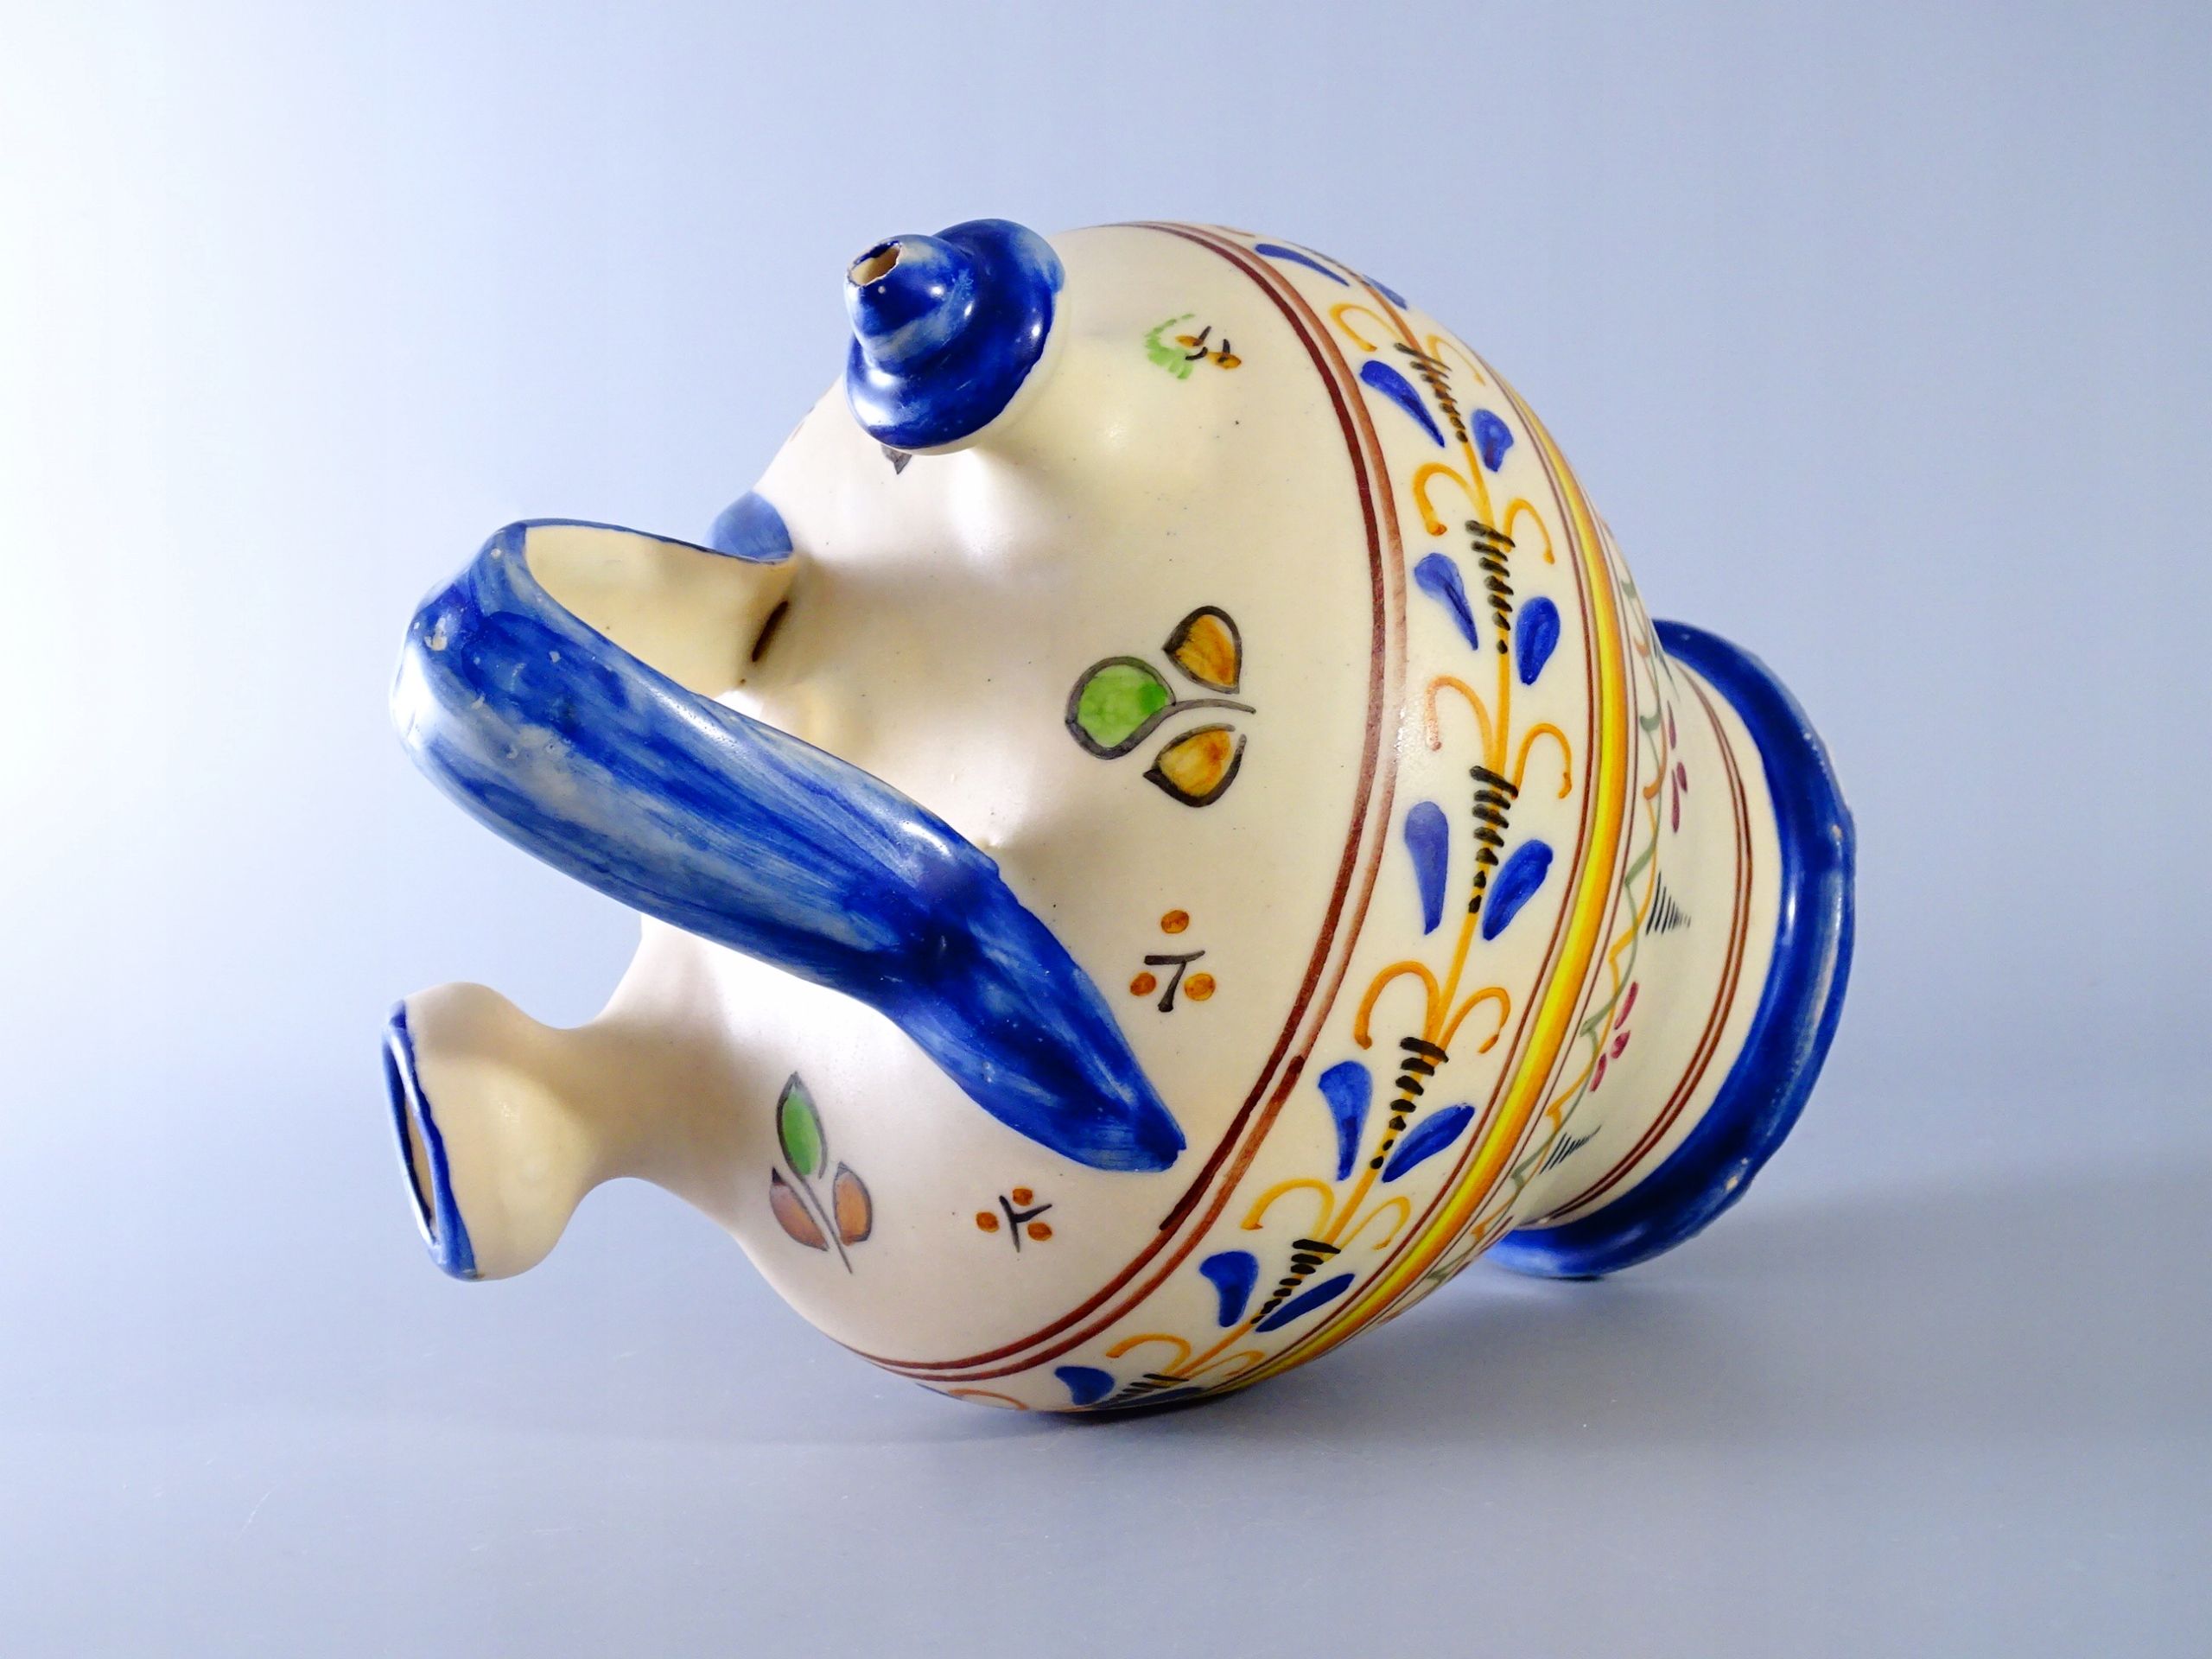 hiszpania stara malowana butla ceramiczna